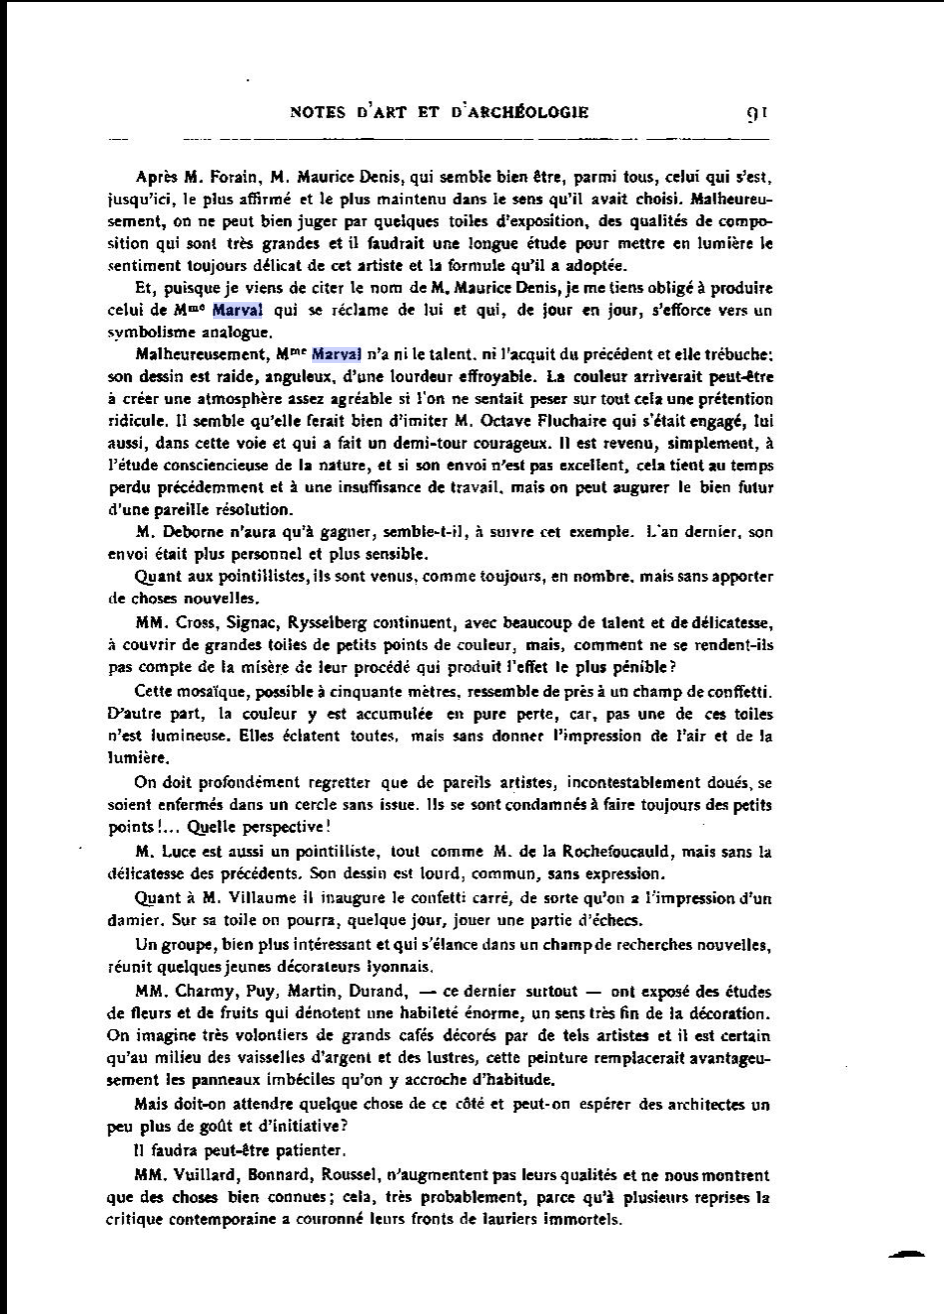 1903 - Notes d'Art et d'archéologie - Mouliet.png